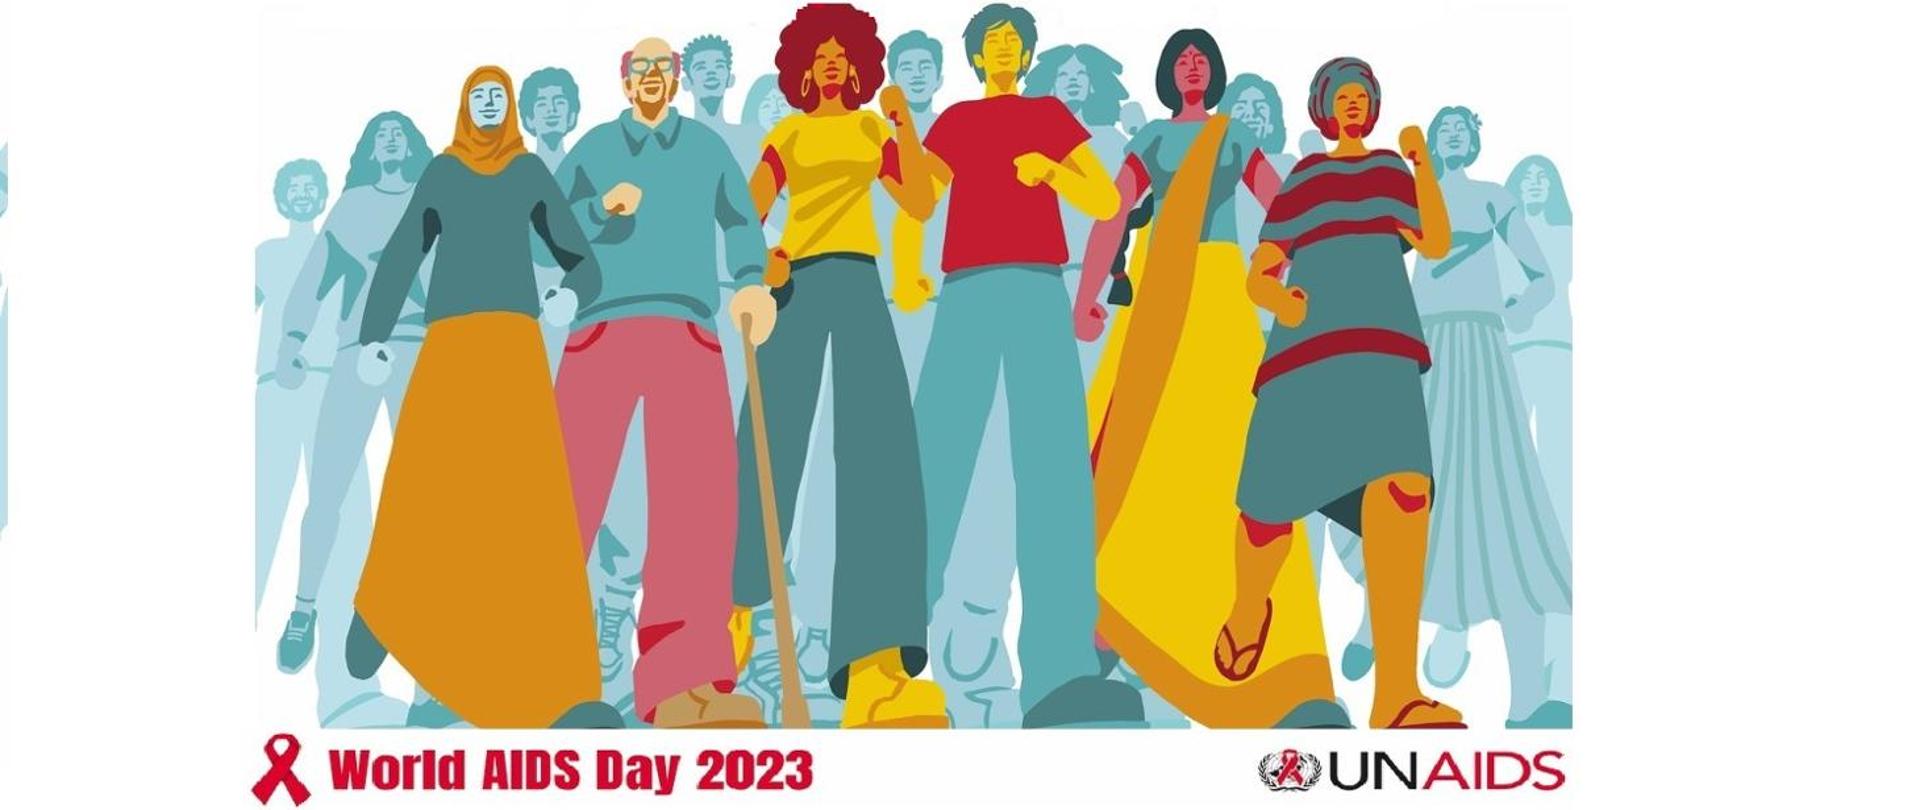 grupa osób różnych narodowości ubrana w kolorowe stroje, zaciśnięte pięści w dole grafiki czerwona wstążeczka i napis World AIDS Day 2023